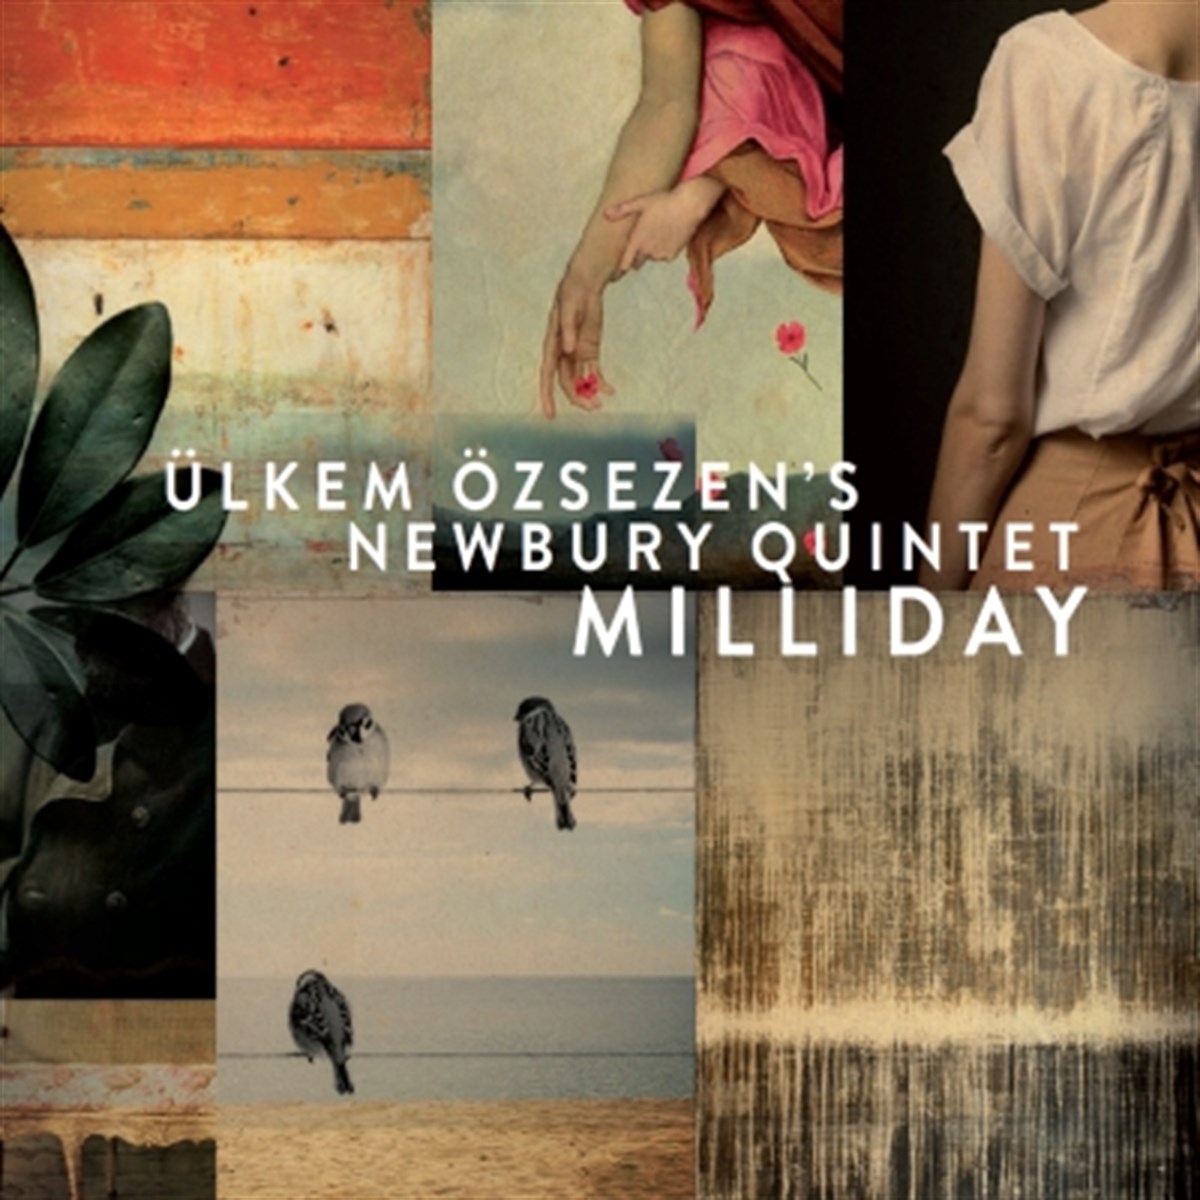 Ülkem Özsezens Newbury Quintet Milliday